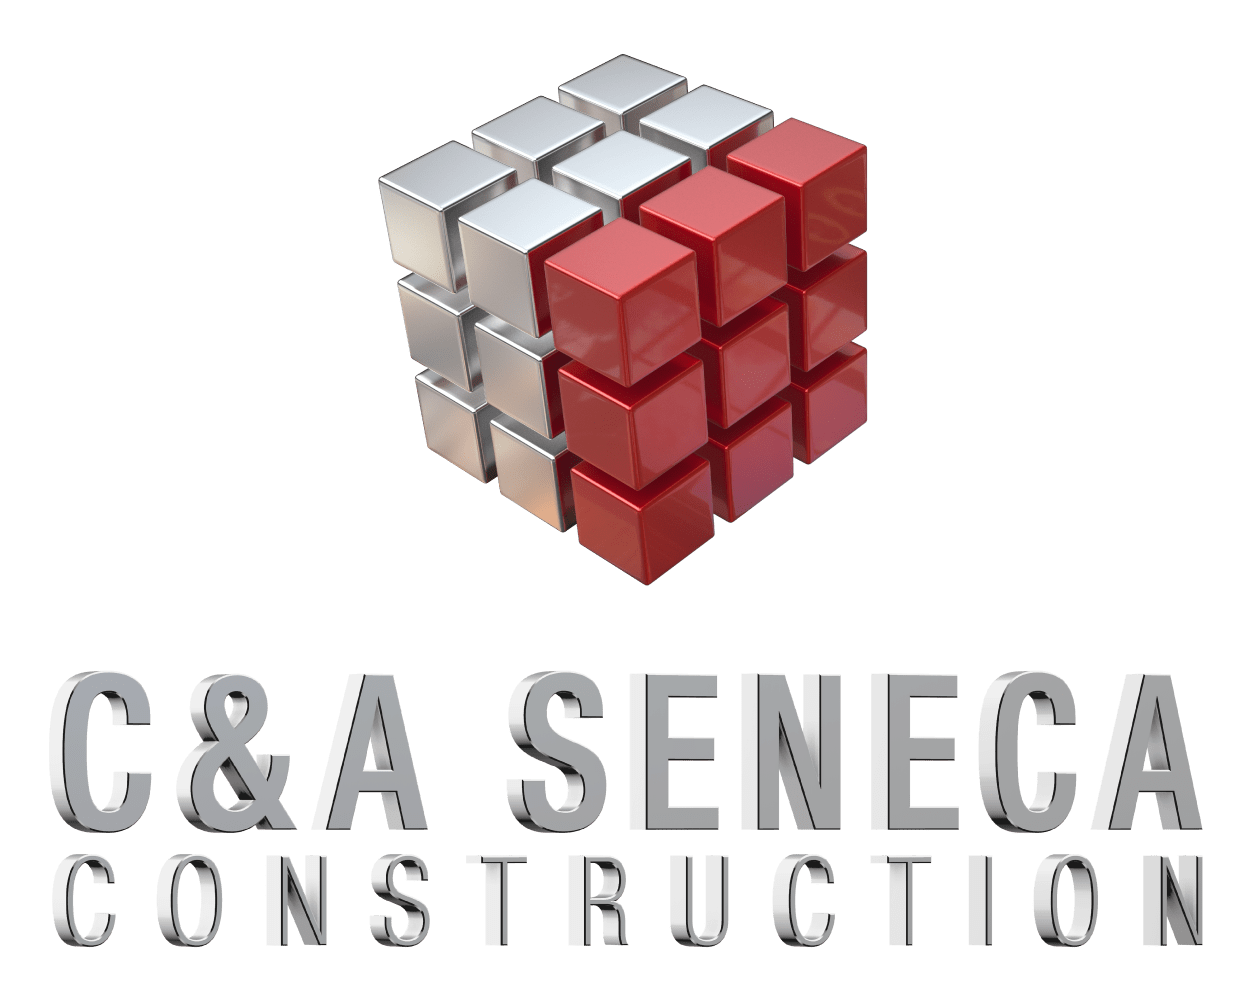 C&A Seneca Construction 59